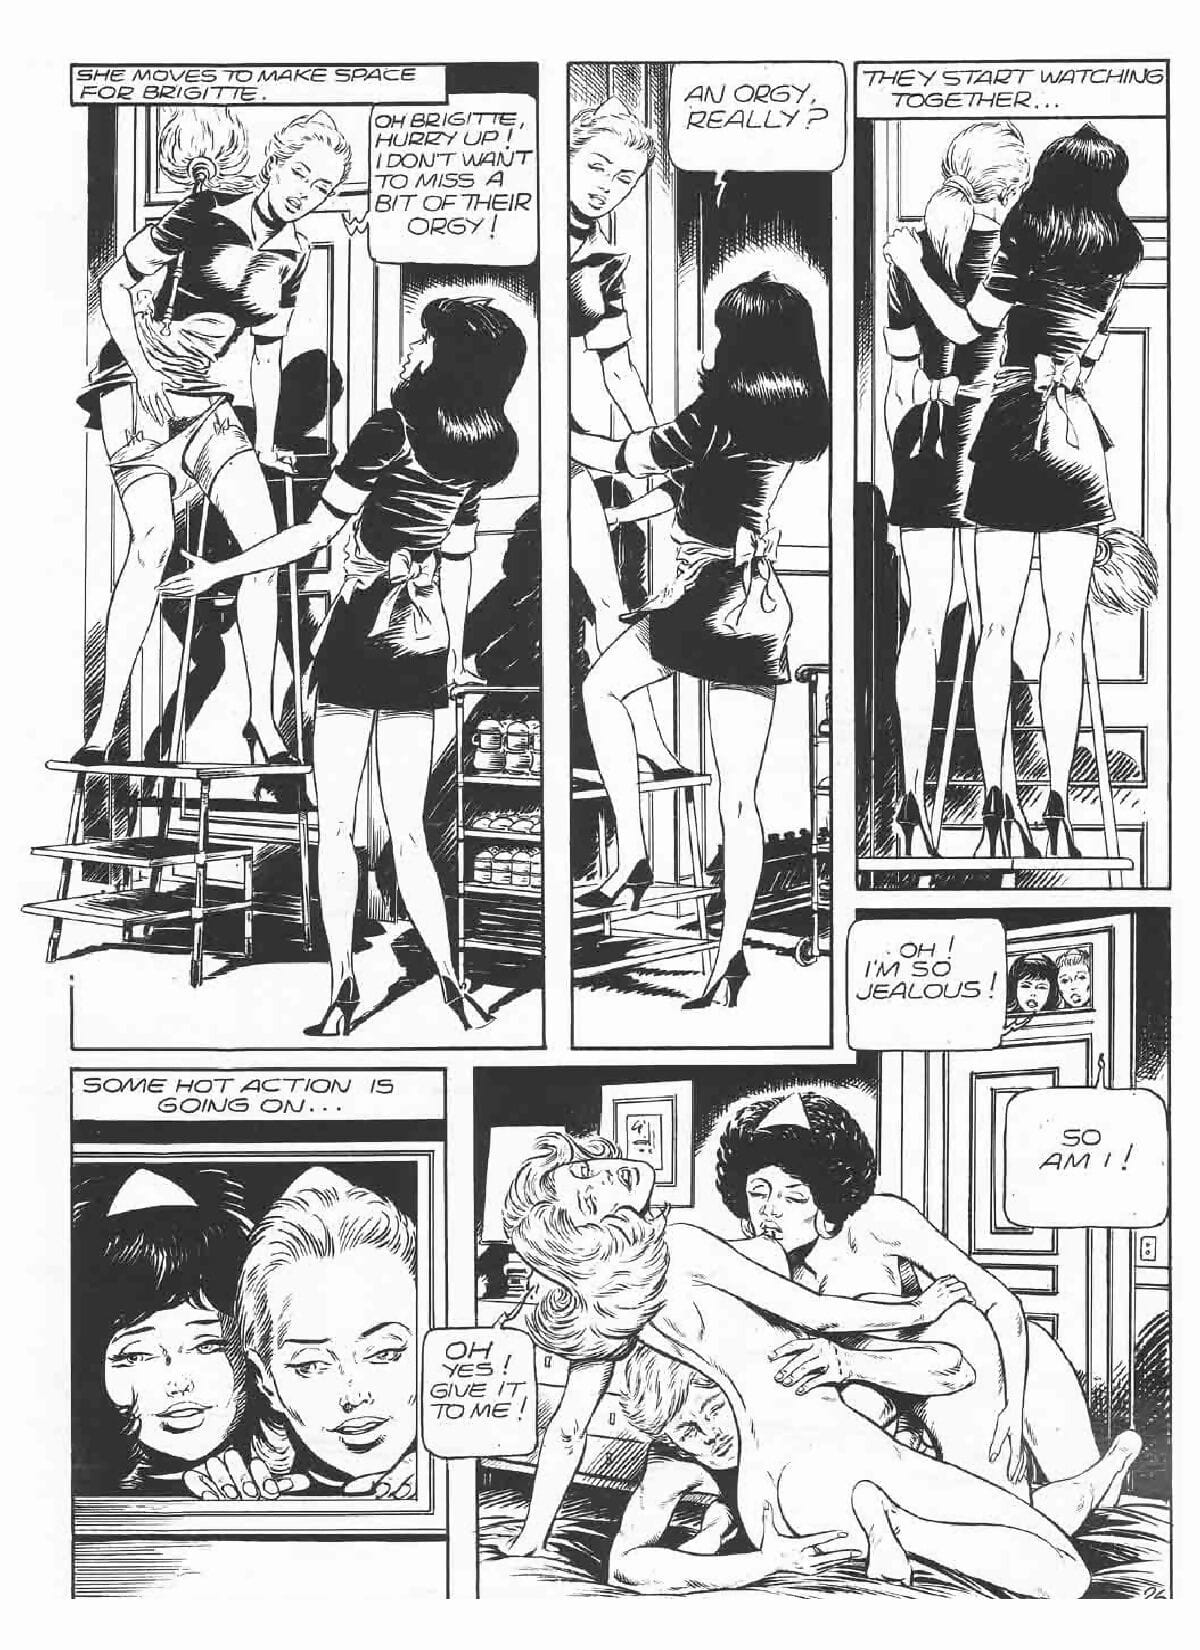 Brigitte De Luxe Maid #3 page 1